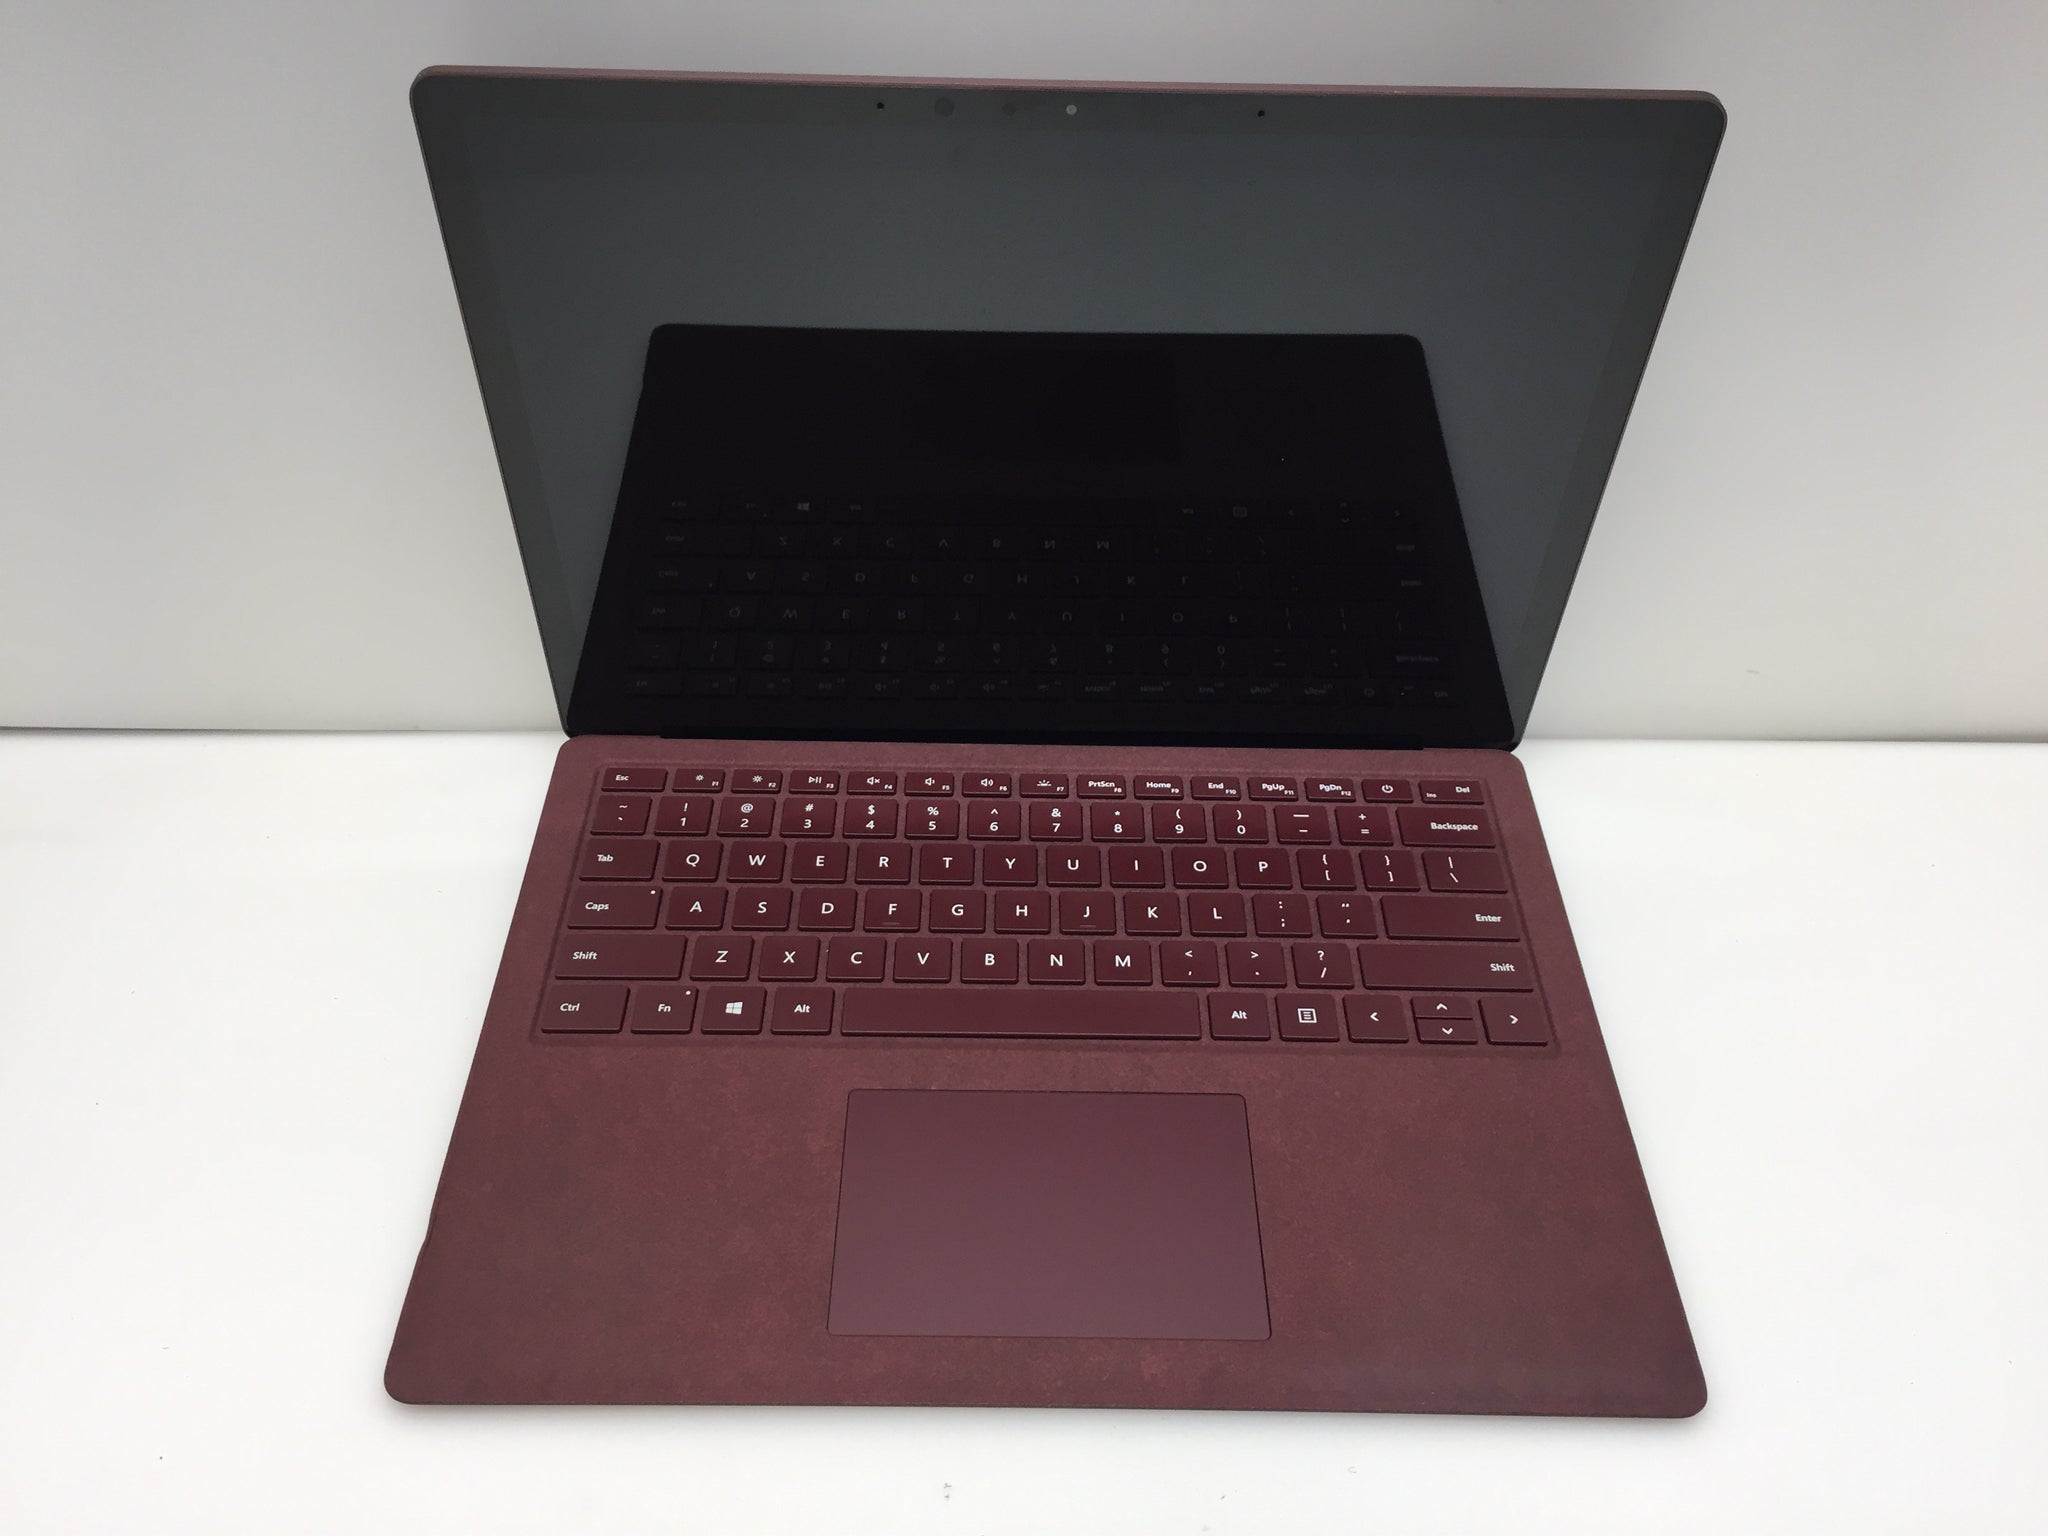 Introducing Surface Laptop 5 